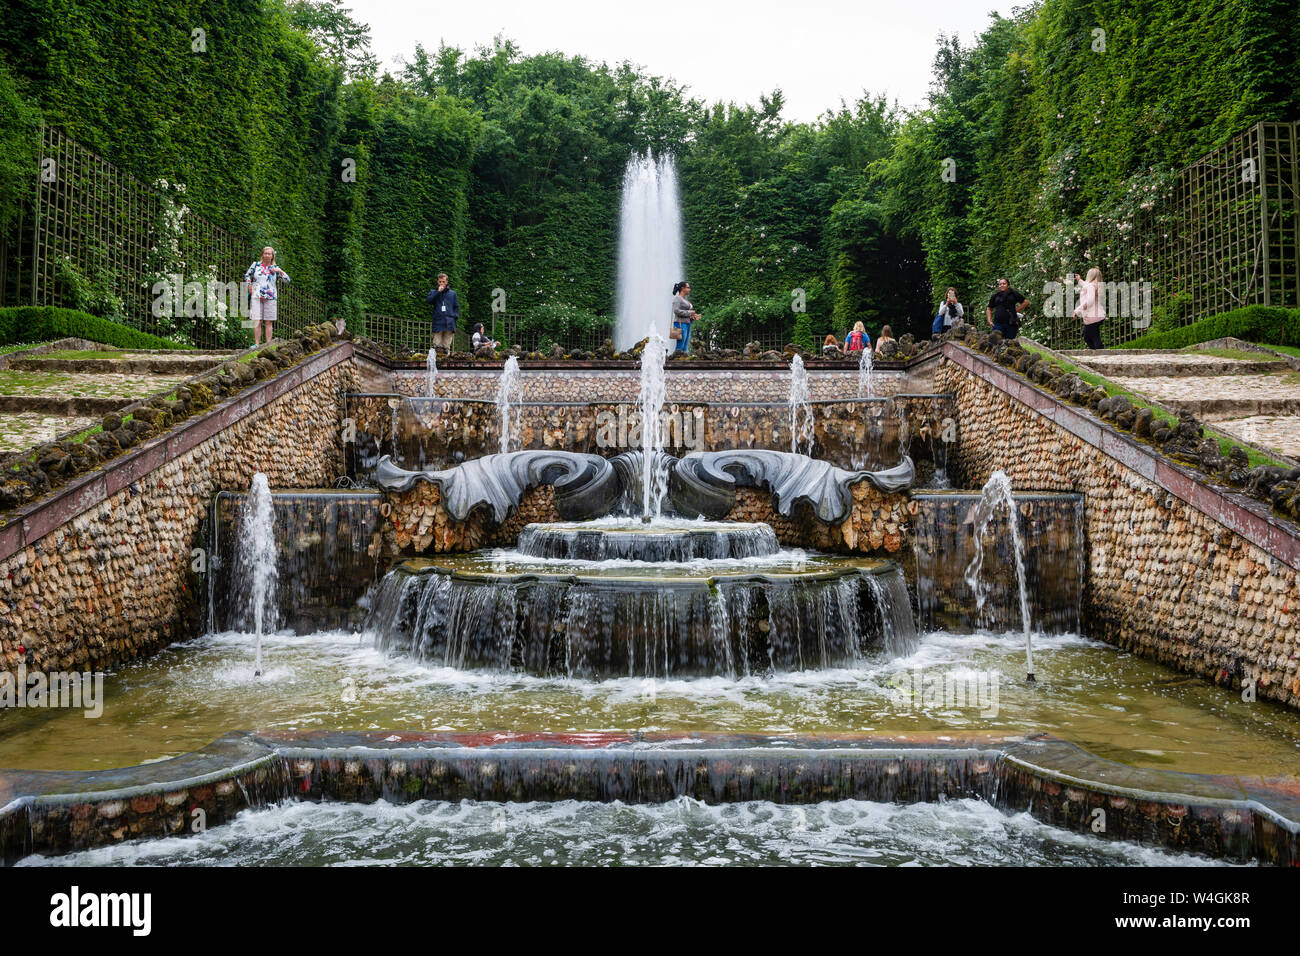 Oberen Pool der Hain der drei Brunnen - Palast von Versailles Gärten, Yvelines, Region Île-de-France Frankreich Stockfoto